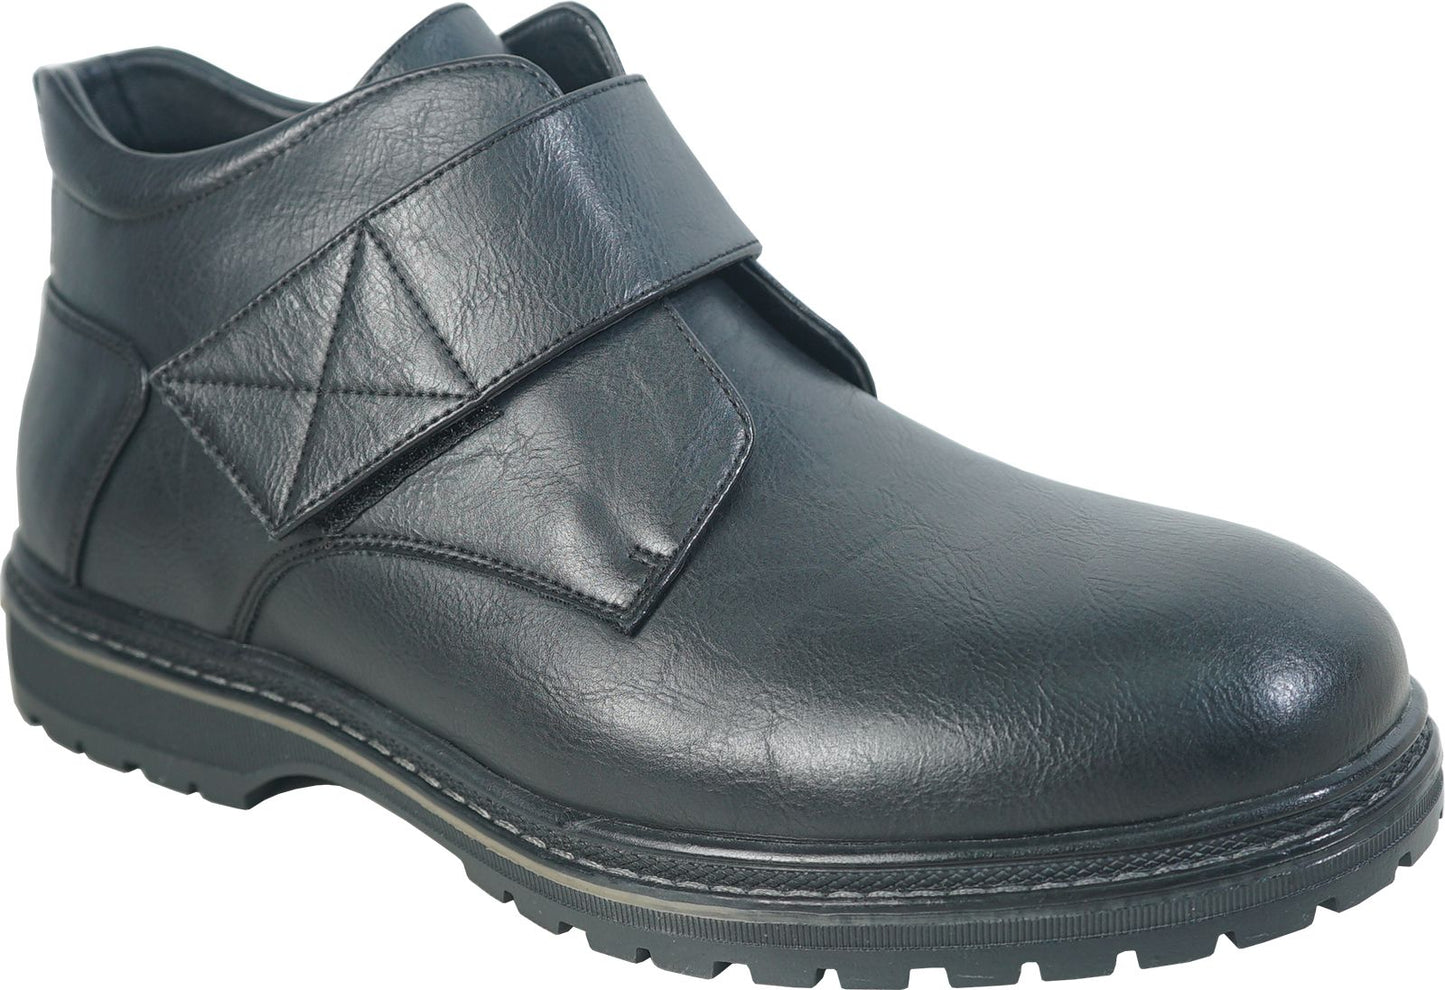 Vangelo Boots Mark 5 Black